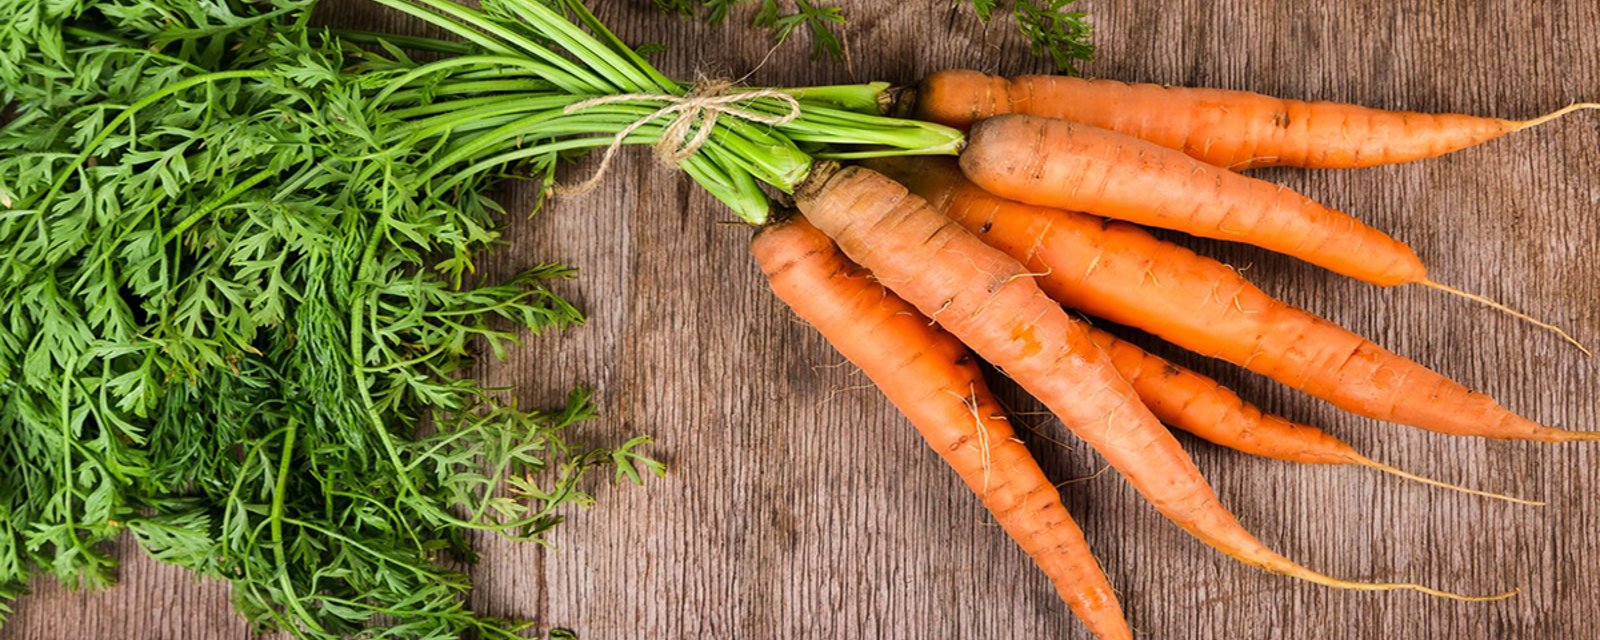 Des carottes fraîches et croquantes pendant une éternité... c'est possible!